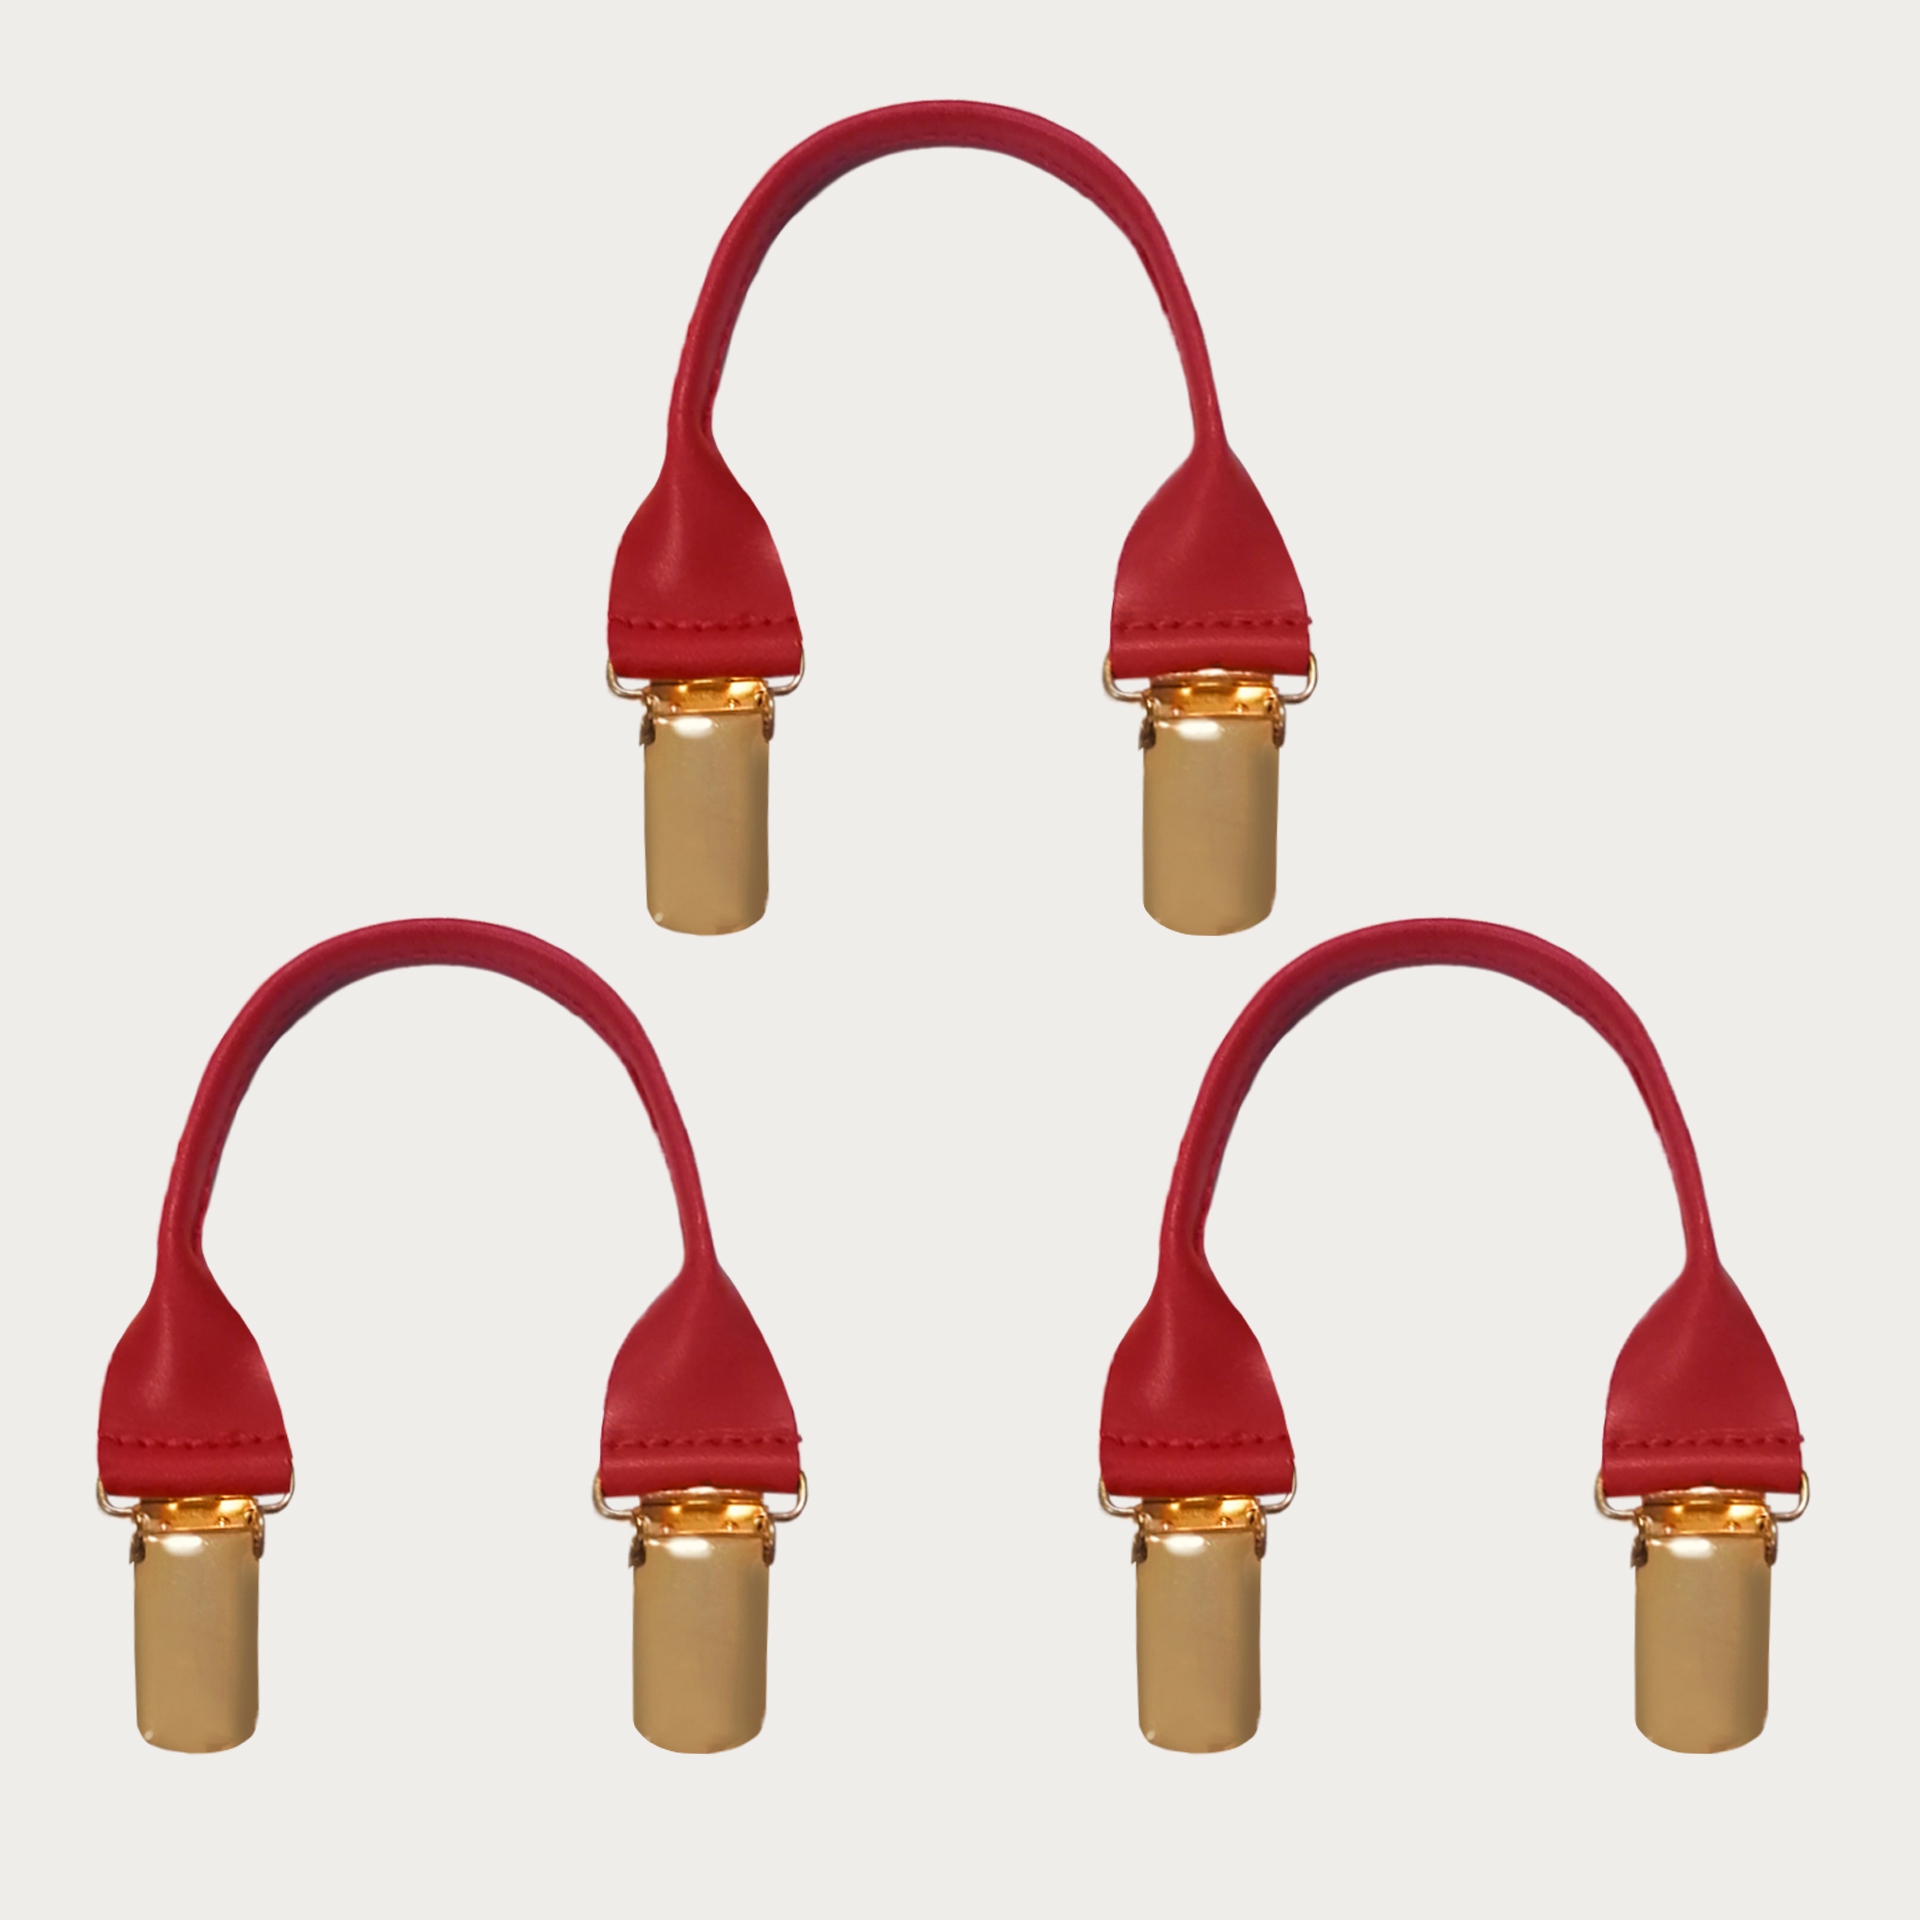 BRUCLE Connecteurs en cuir avec clips dorés, 3 pcs., rouge